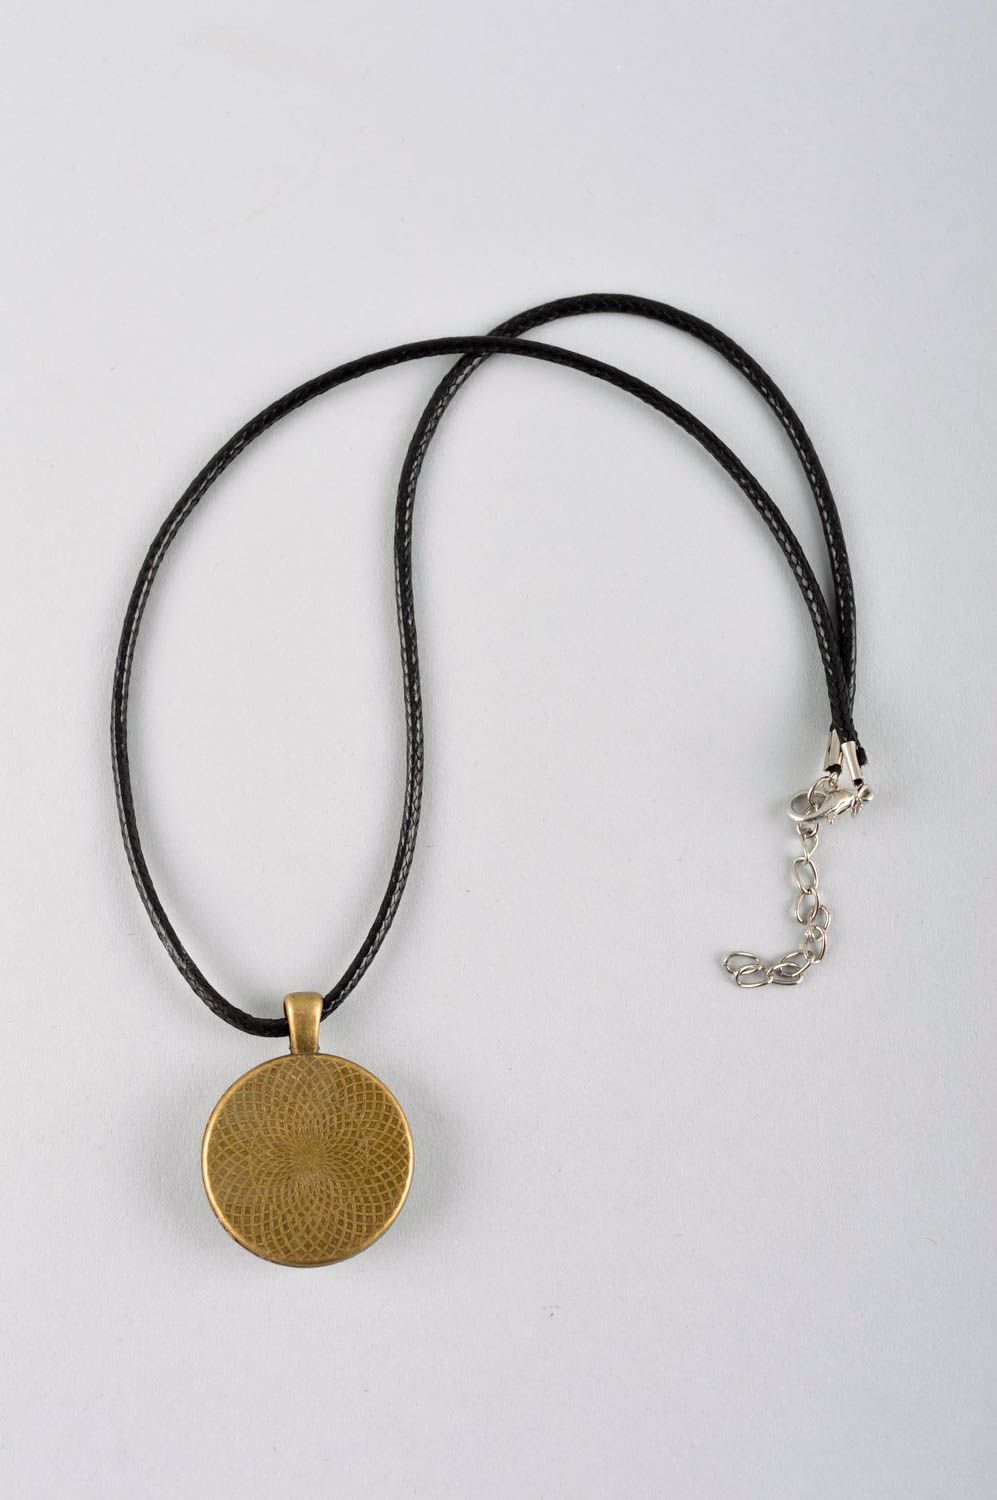 Handmade designer pendant everyday accessories for women glass pendant for girl photo 4